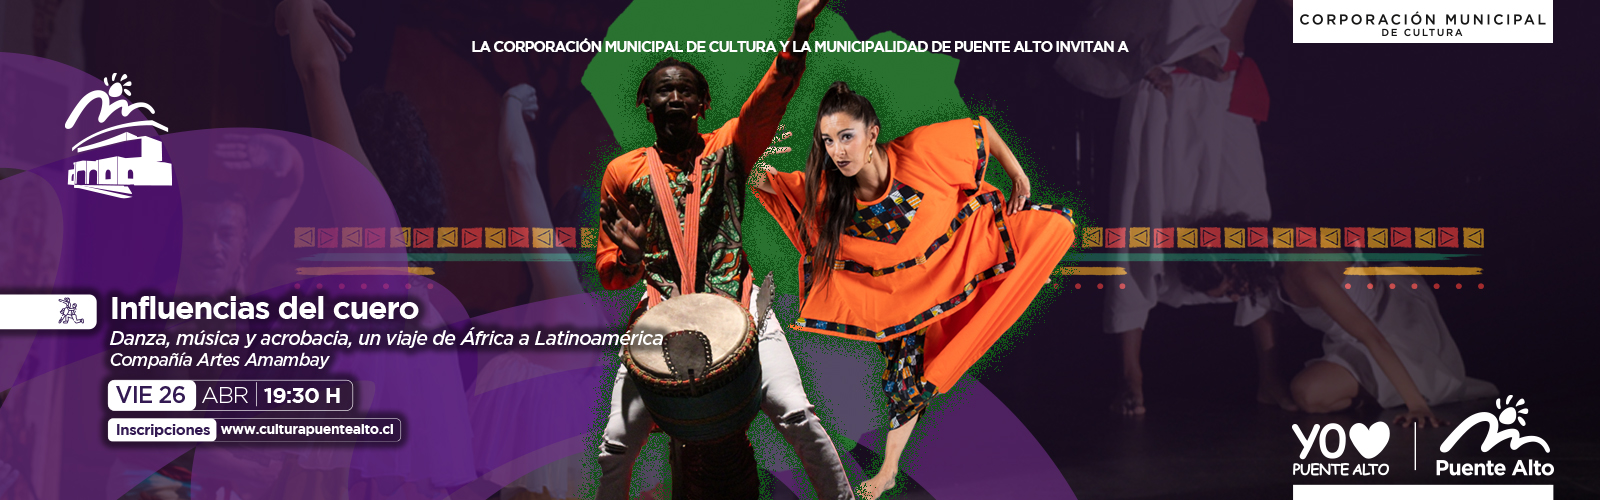 Banner Noticias y Eventos de la Corporación Cultural de Puente Alto